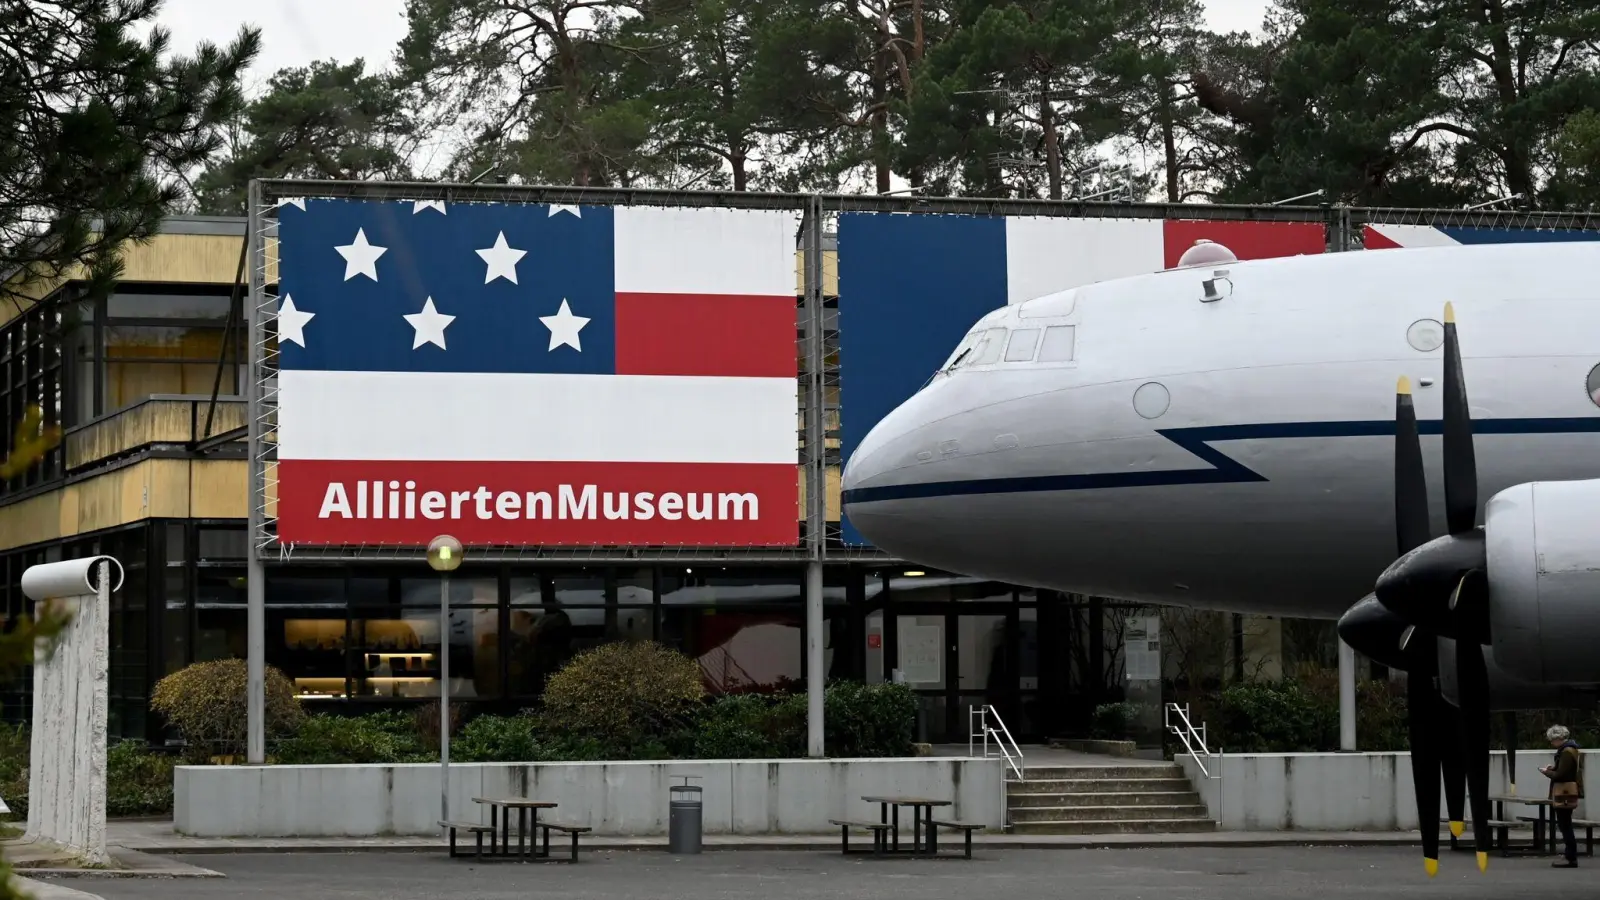 Im Bezirk Steglitz-Zehlendorf befindet sich Alliiertenmuseum. Auf dem Freigelände steht das Luftbrückenflugzeug Hastings TG 503 steht. (Foto: Jonathan Penschek/dpa)